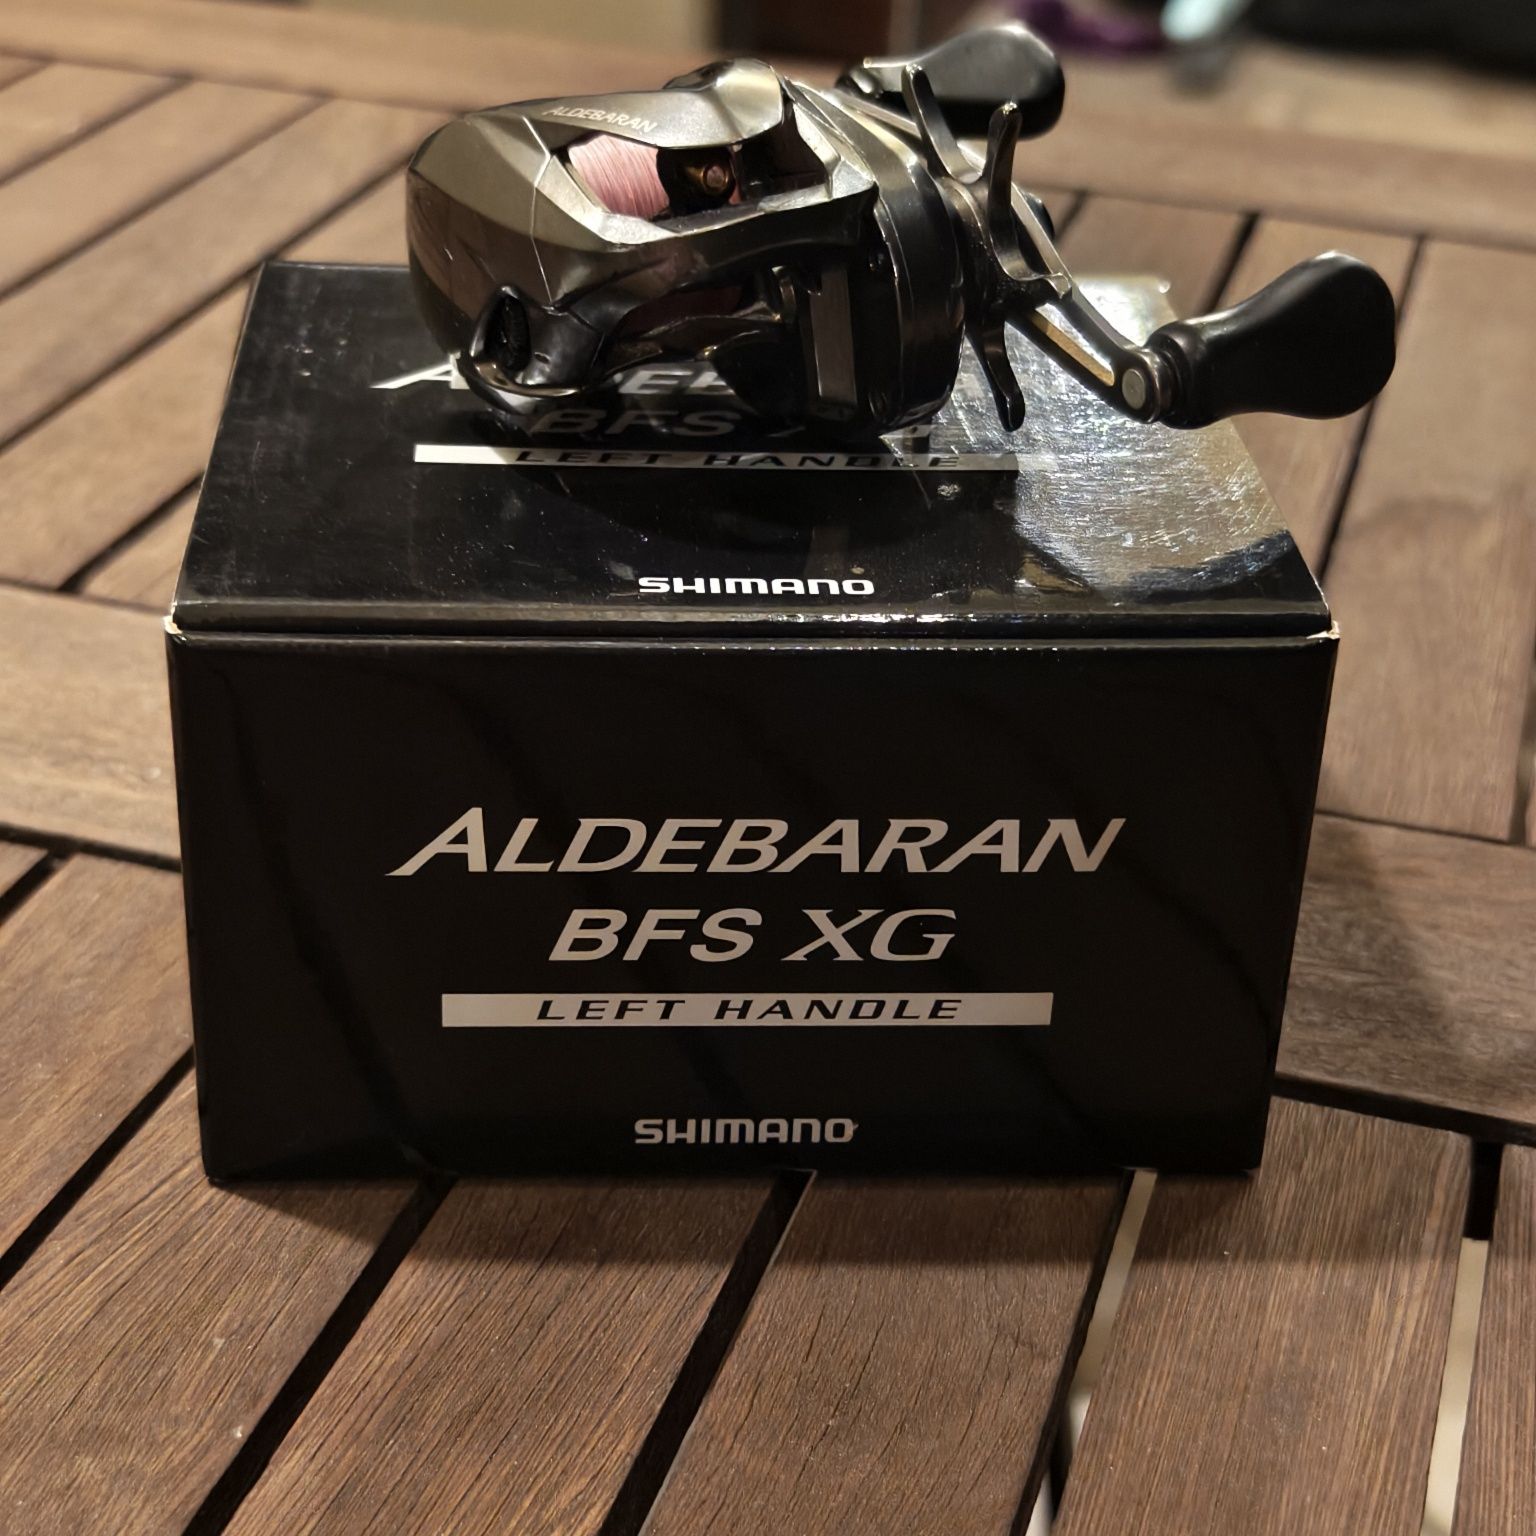 Shimano Aldebaran BFS XG model 2016